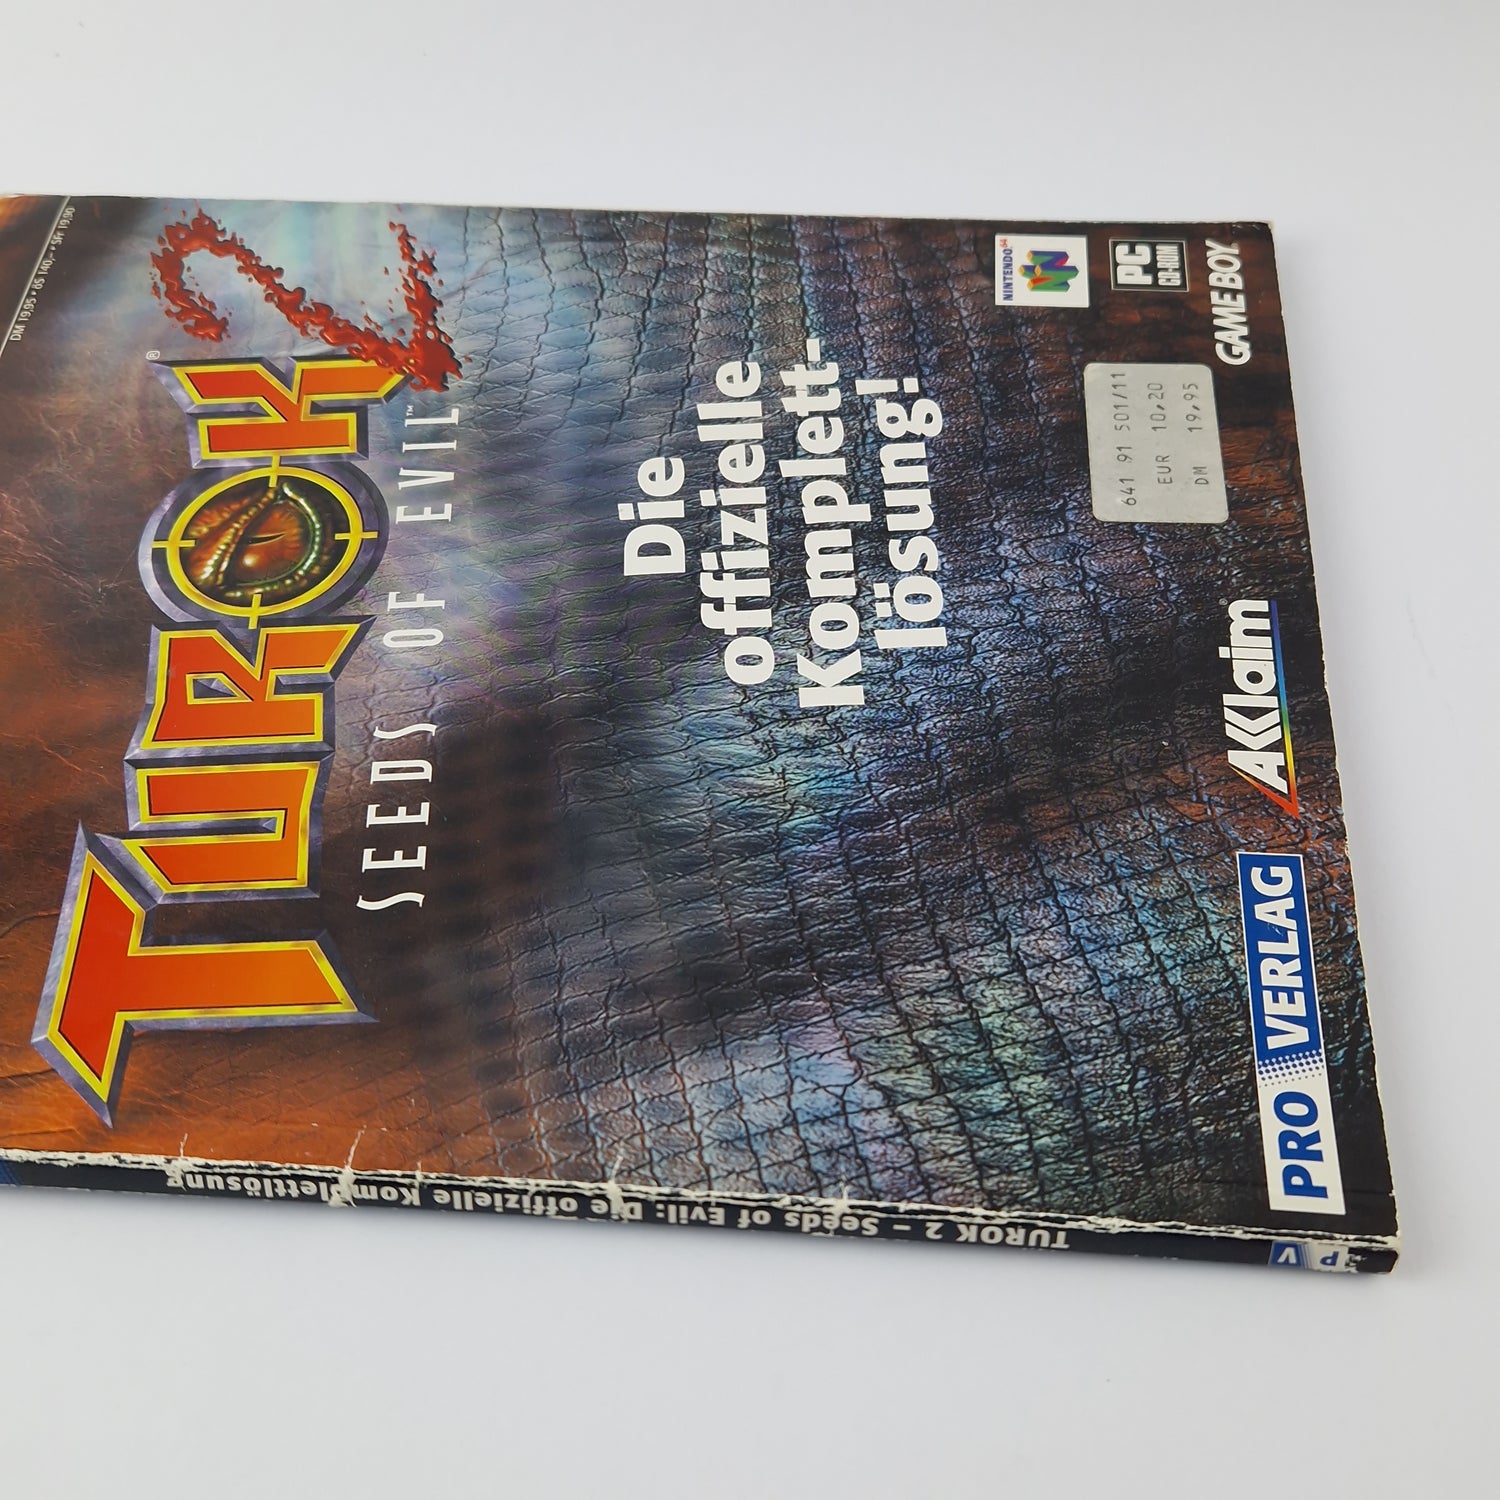 Game Advisor #1: Turok 2 Seeds of Evil - Walkthrough Book N64 Gameboy PC